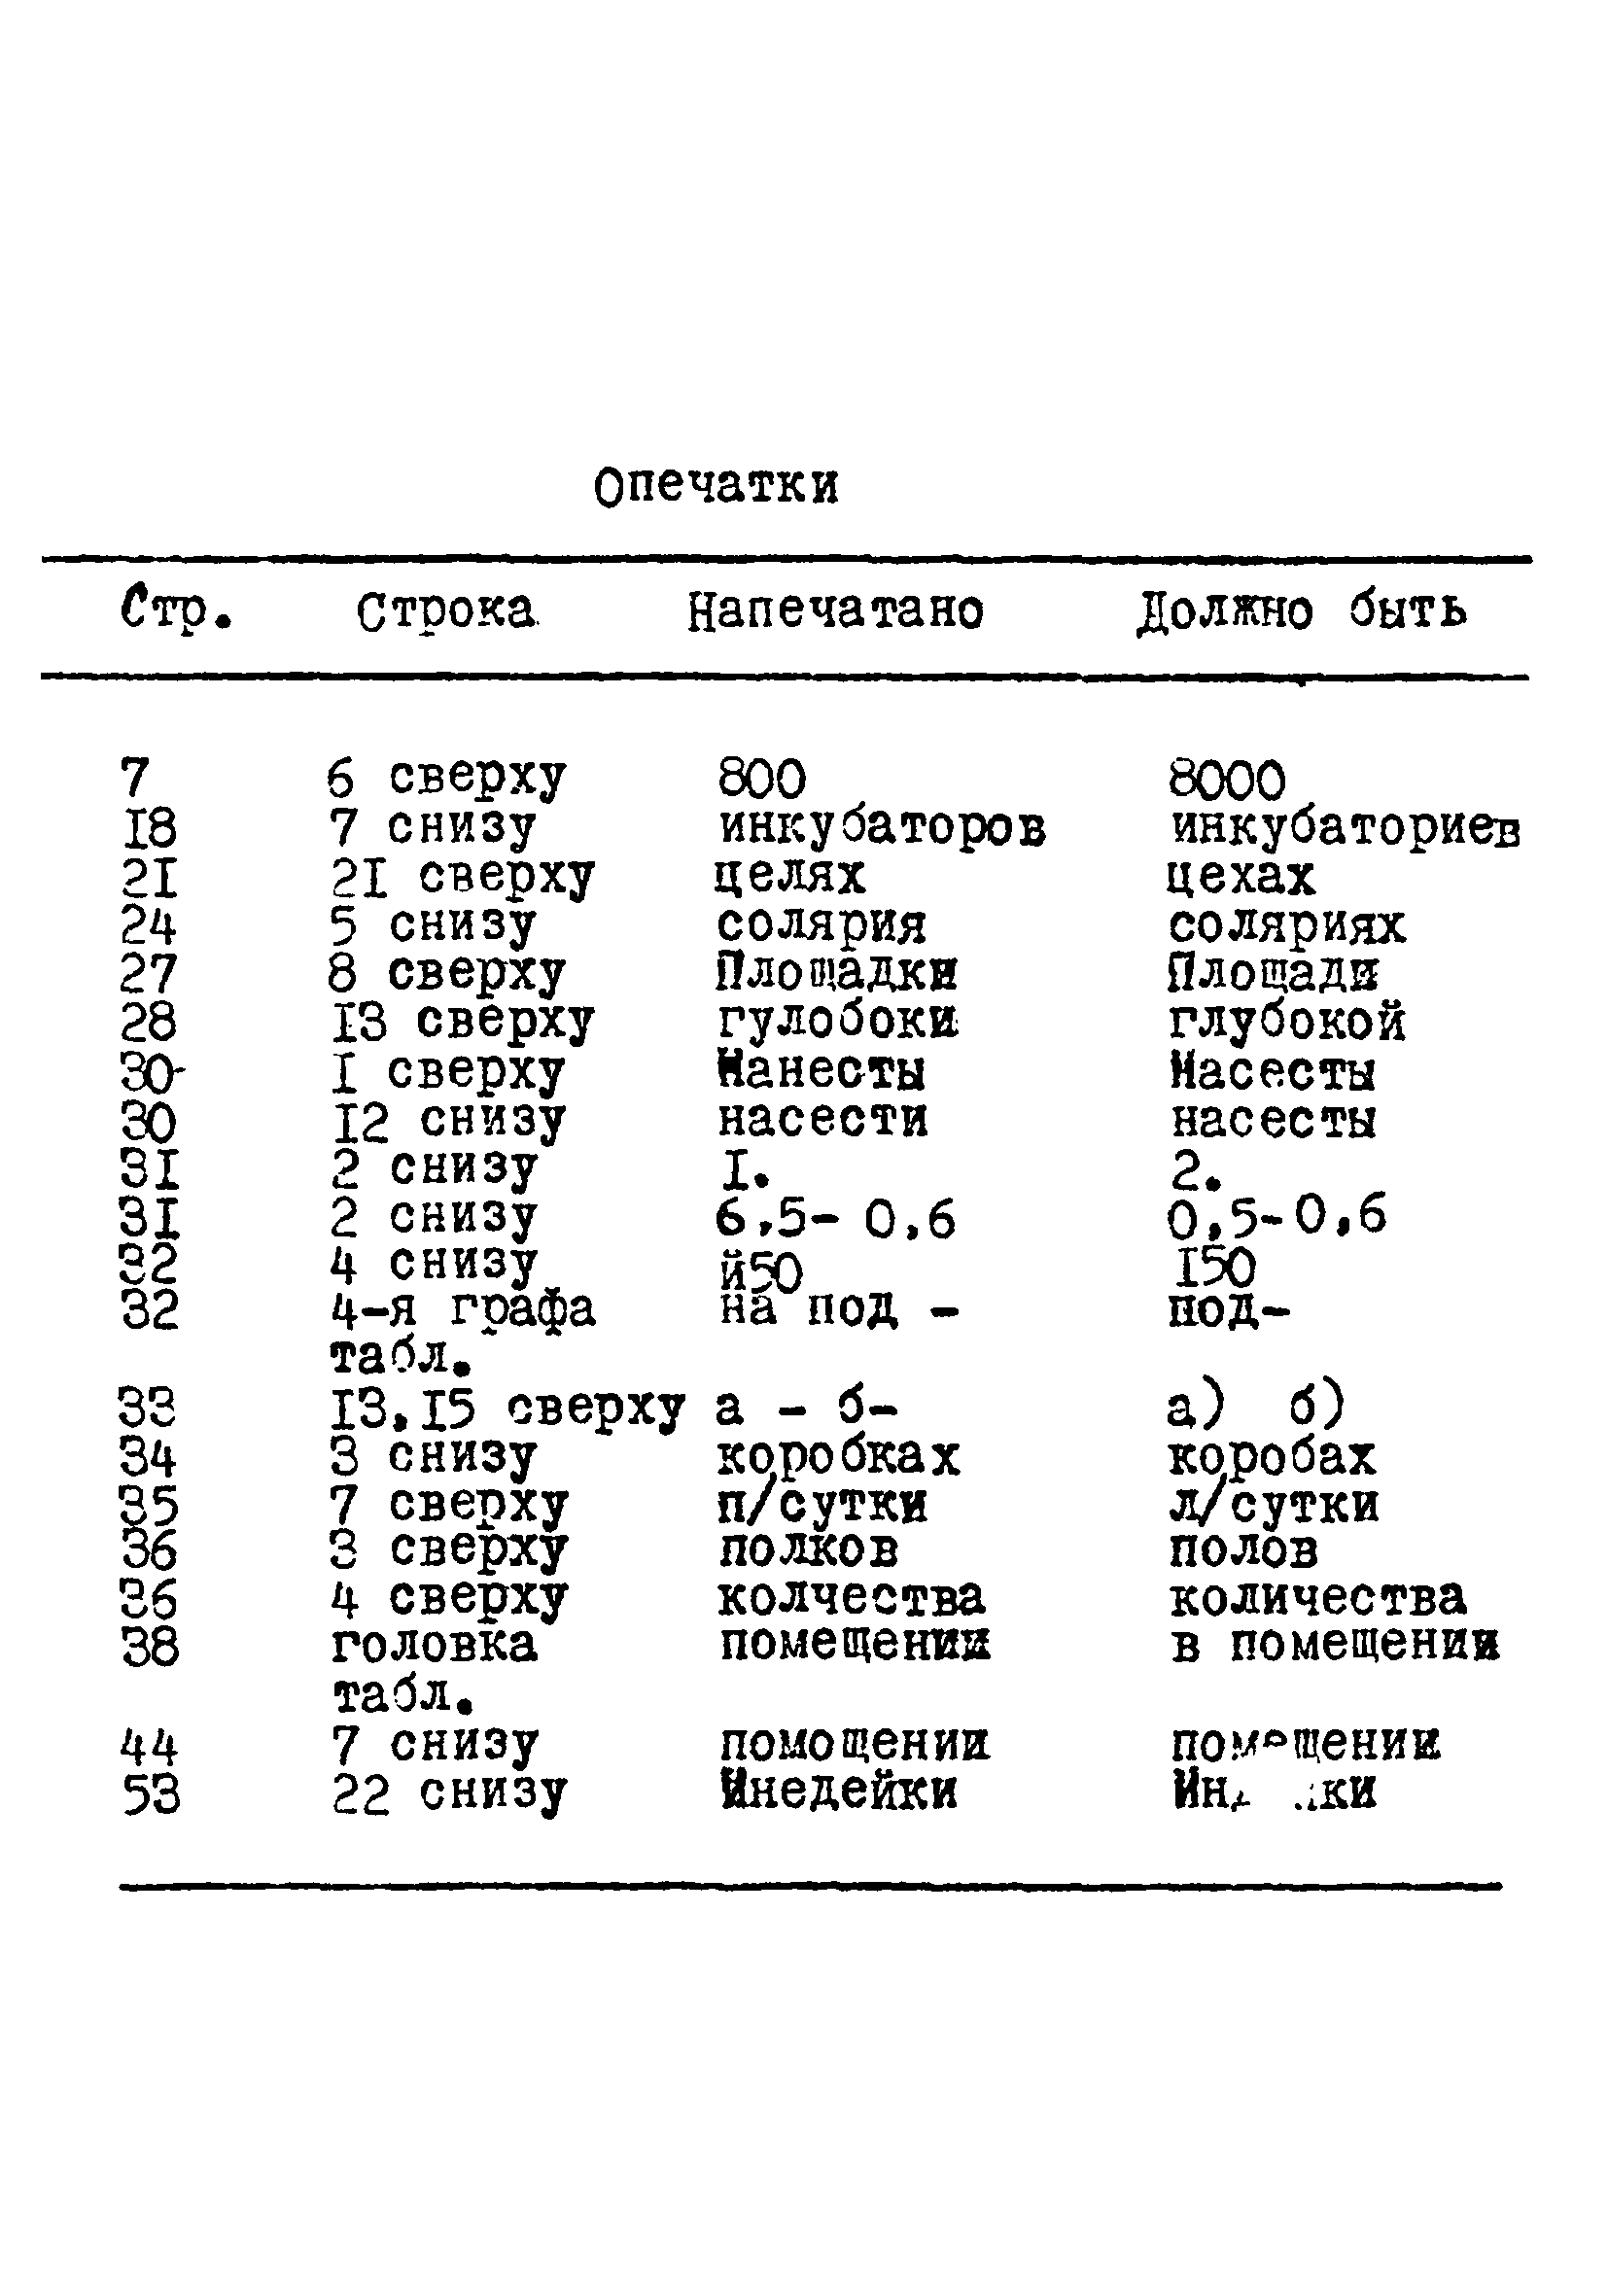 НТП-СХ 4-72